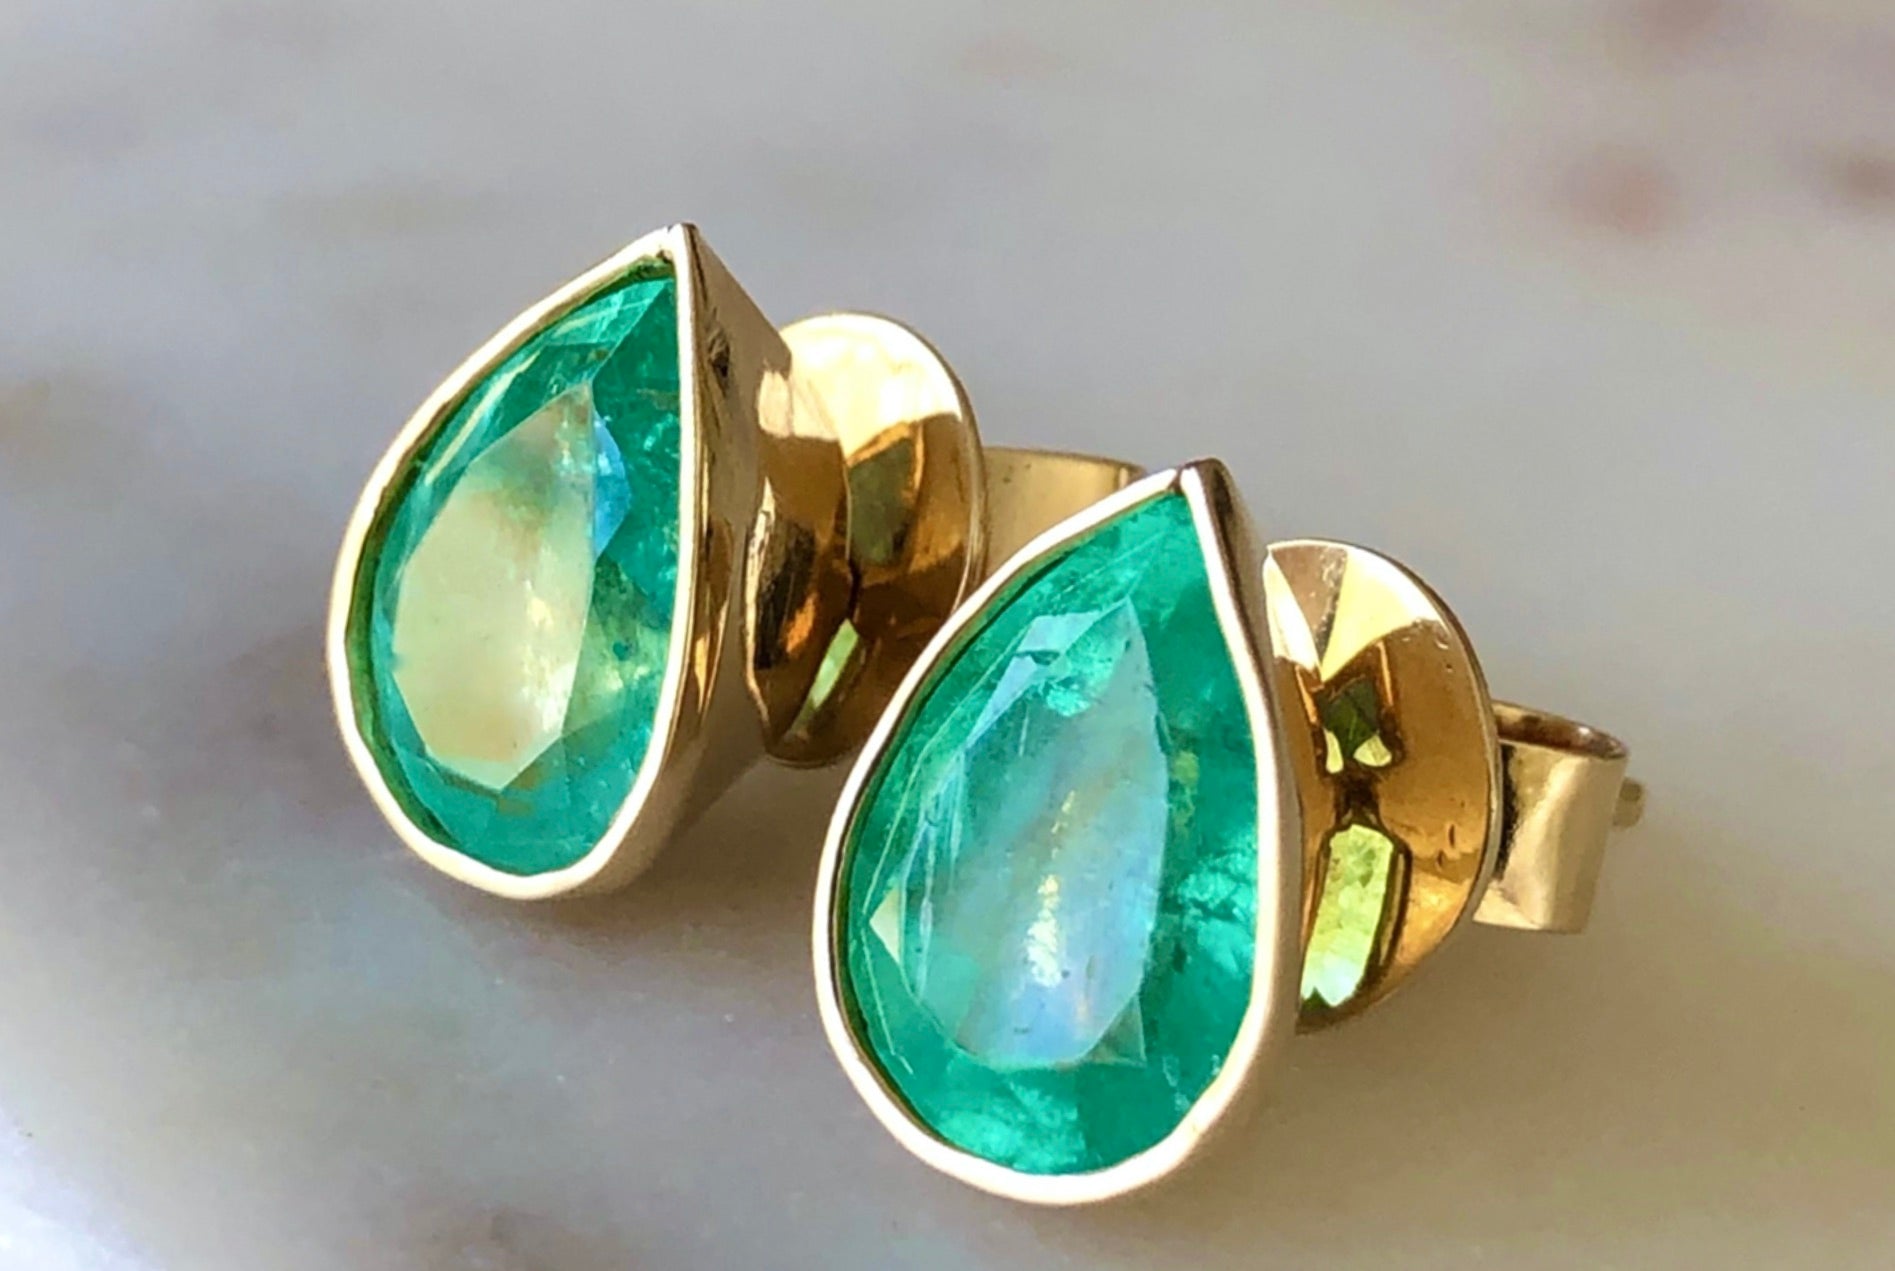 2.40 Carat Natural Colombian Emerald Pear Cut Studs Earrings 18k